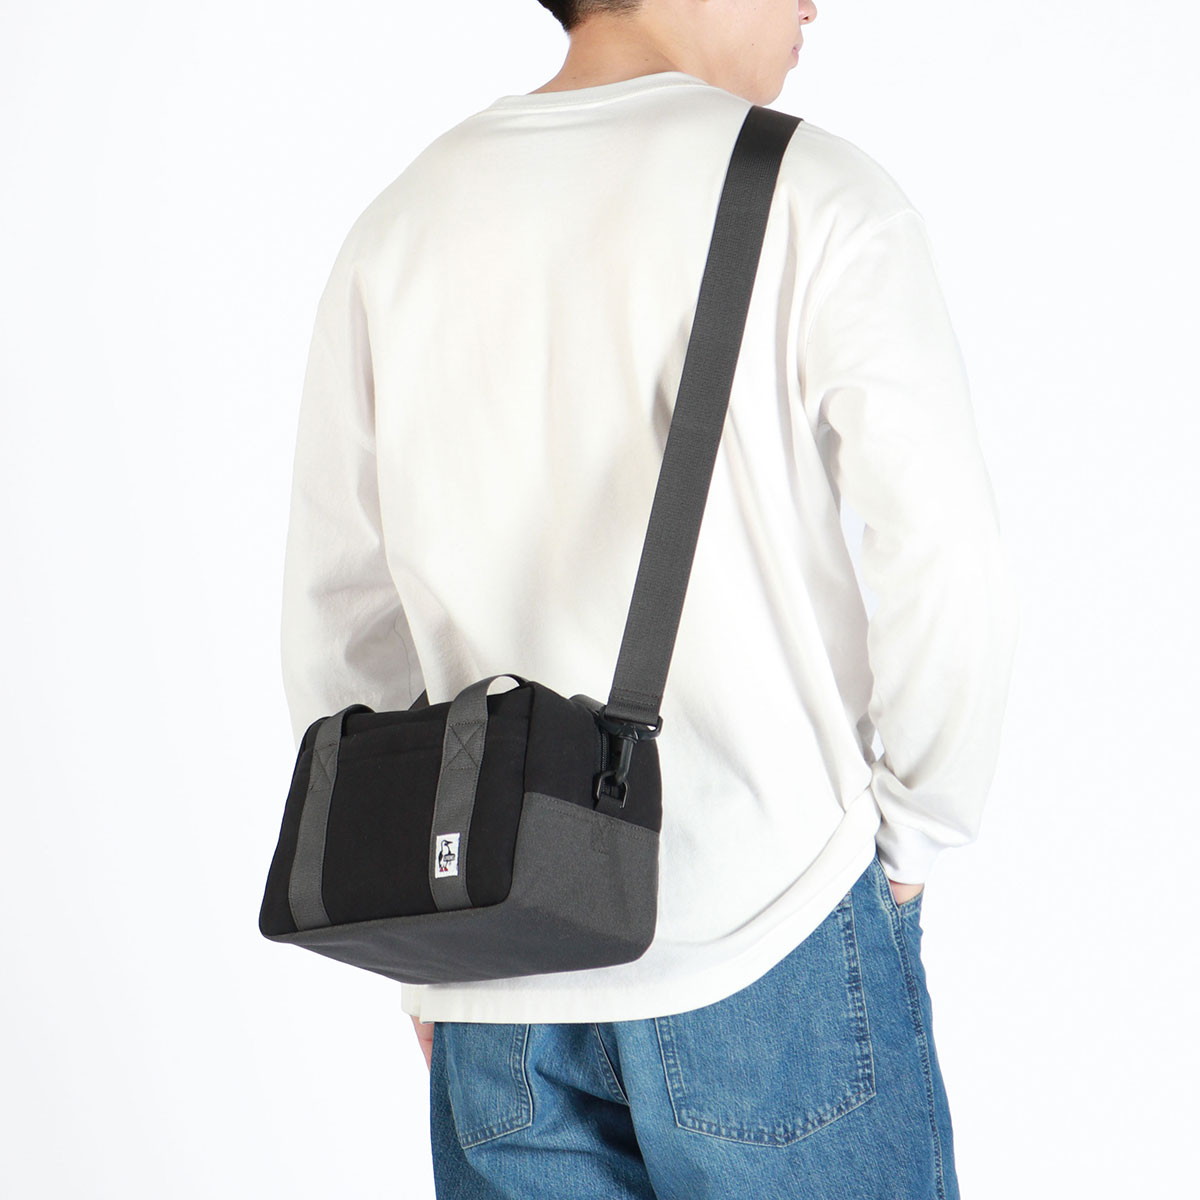  Япония стандартный товар Chums камера сумка плечо однообъективный зеркальный перегородка . женщина CHUMS симпатичный симпатичный модный путешествие камера кейс soft CH60-3603